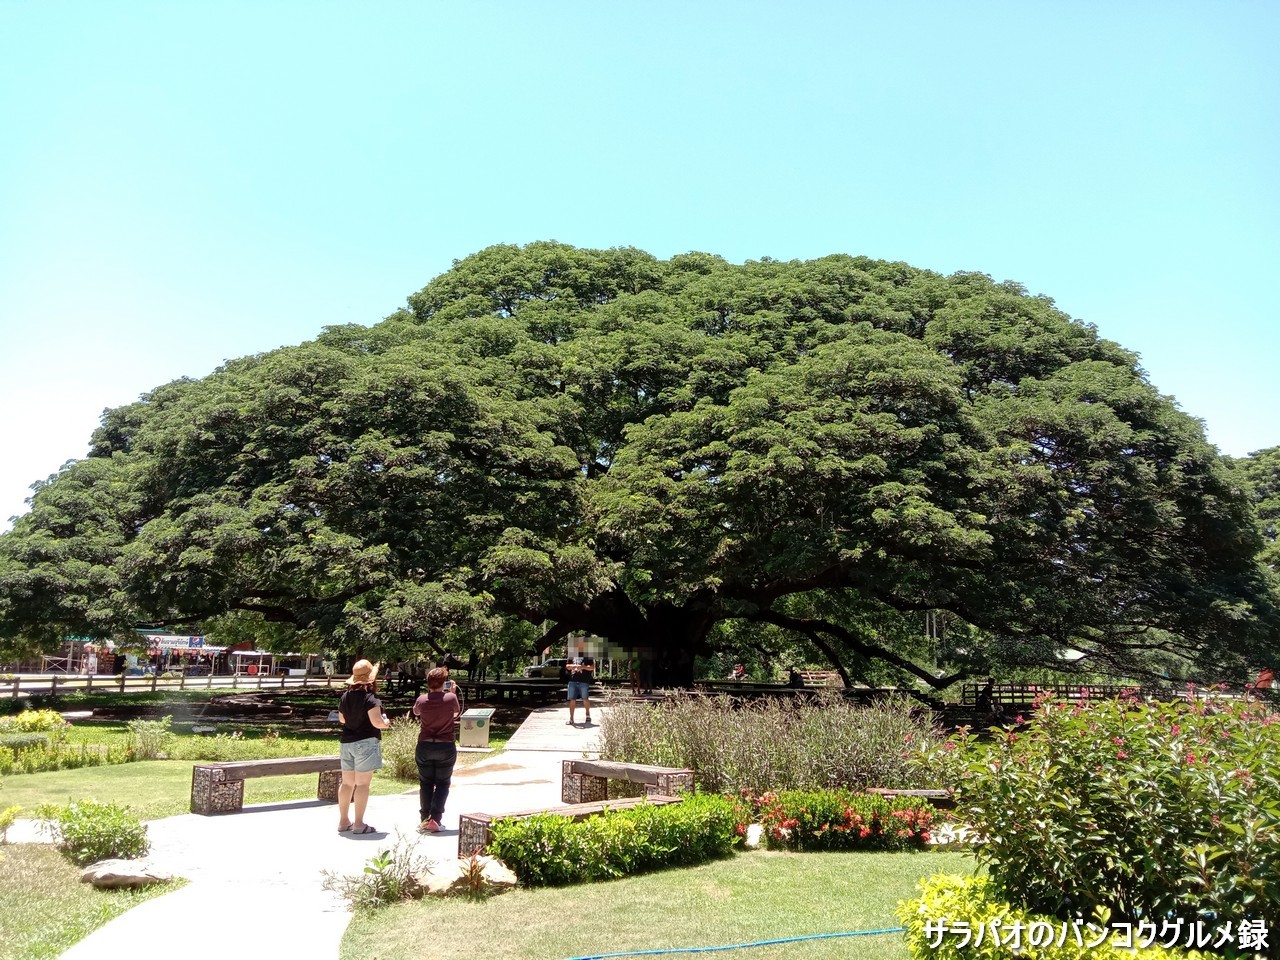 ジャイアント・モンキー・ポッド・ツリーはカンチャナブリにある巨大樹